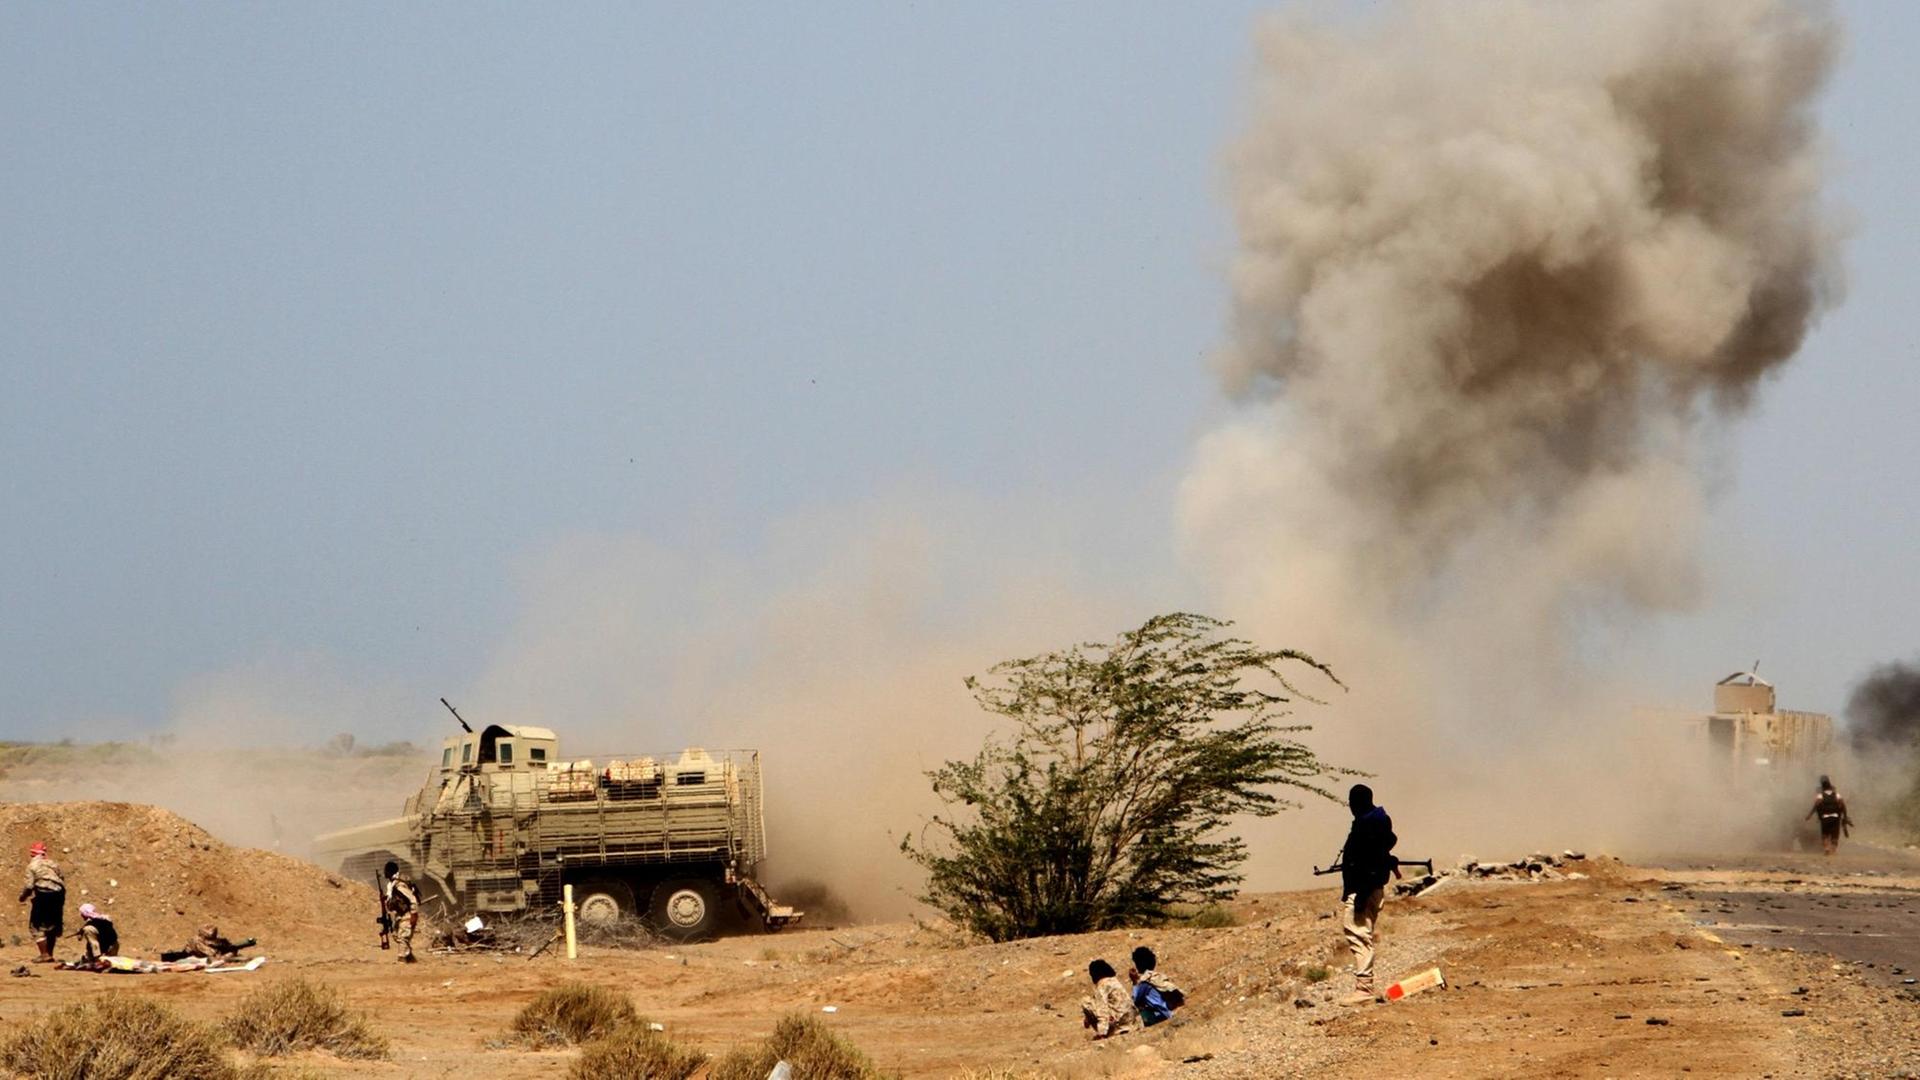 Eine Landmine im Jemen explodiert, eine Rauchwolke steigt auf, im Vordergrund ducken sich Menschen.